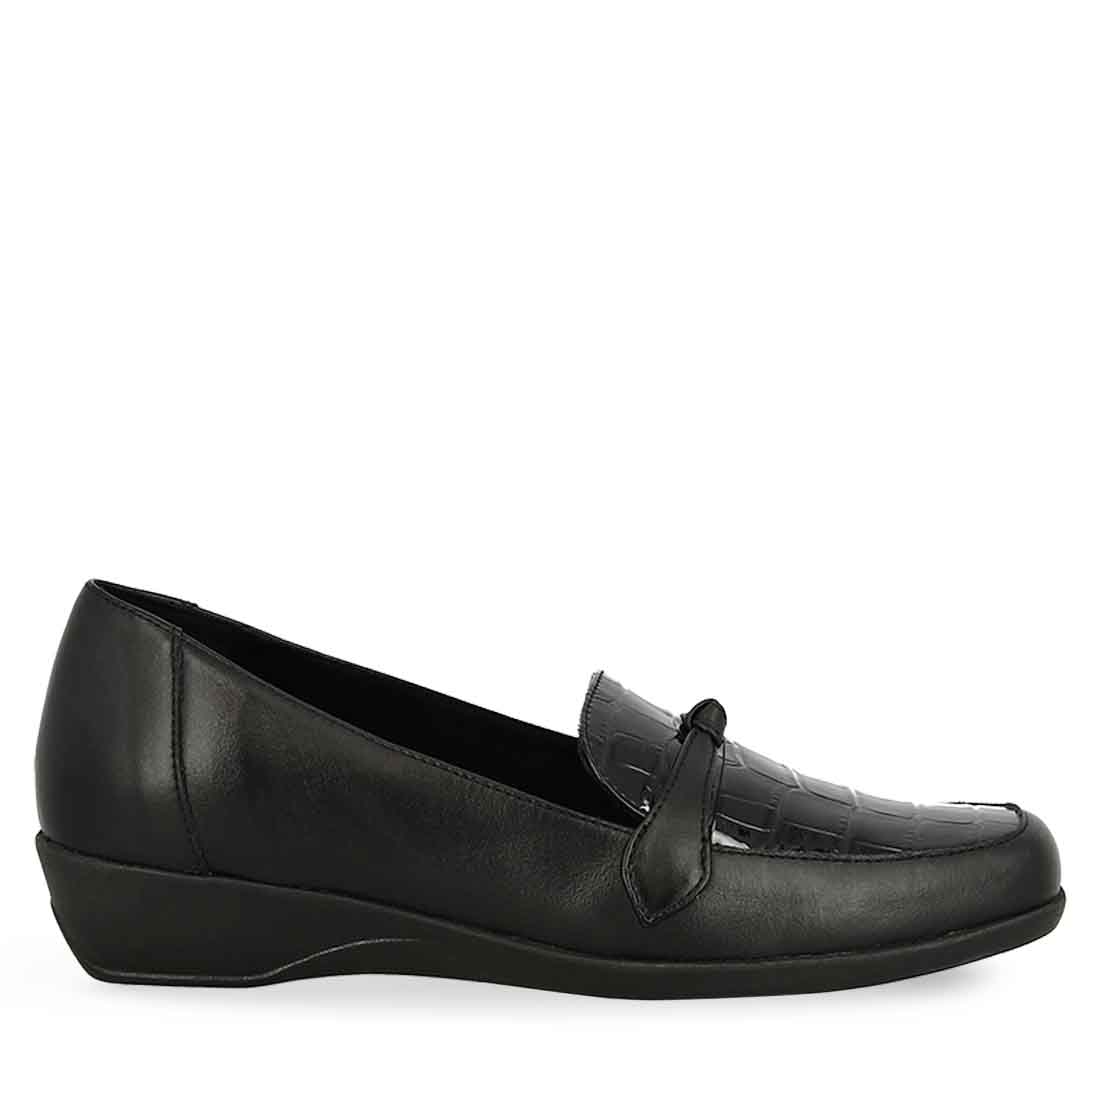 Γυναικείο ανατομικό  δερμάτινο μαύρο  παπούτσι Parex 10526006.Β